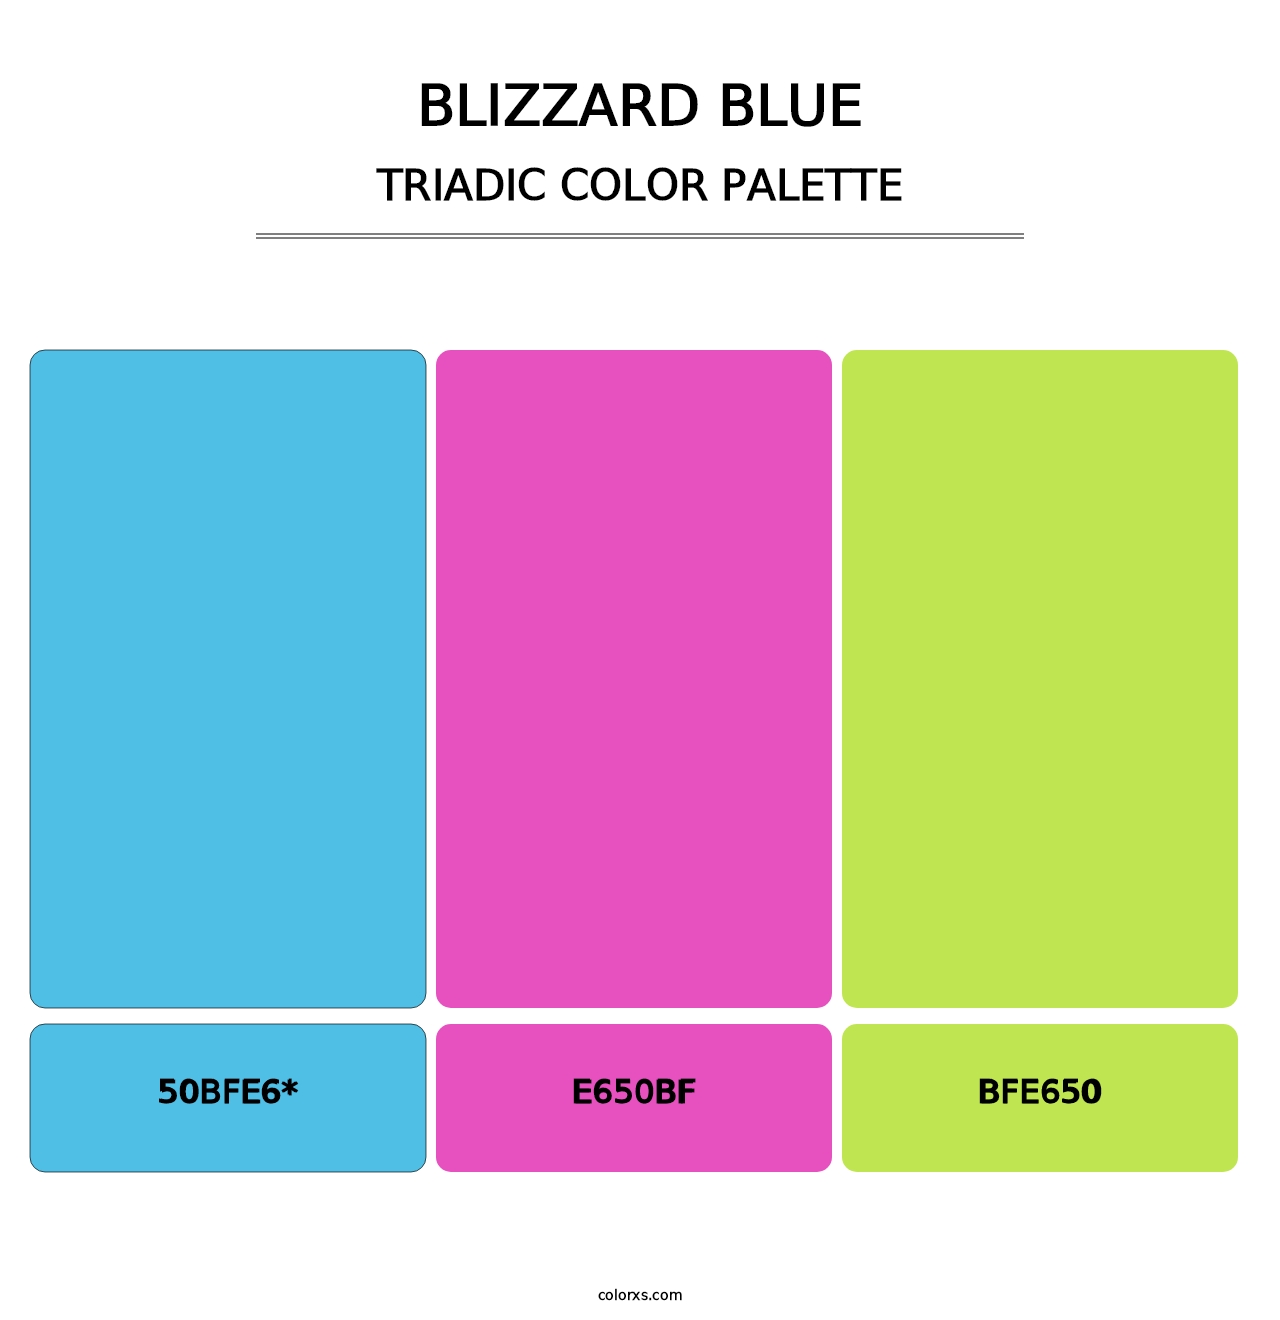 Blizzard Blue - Triadic Color Palette